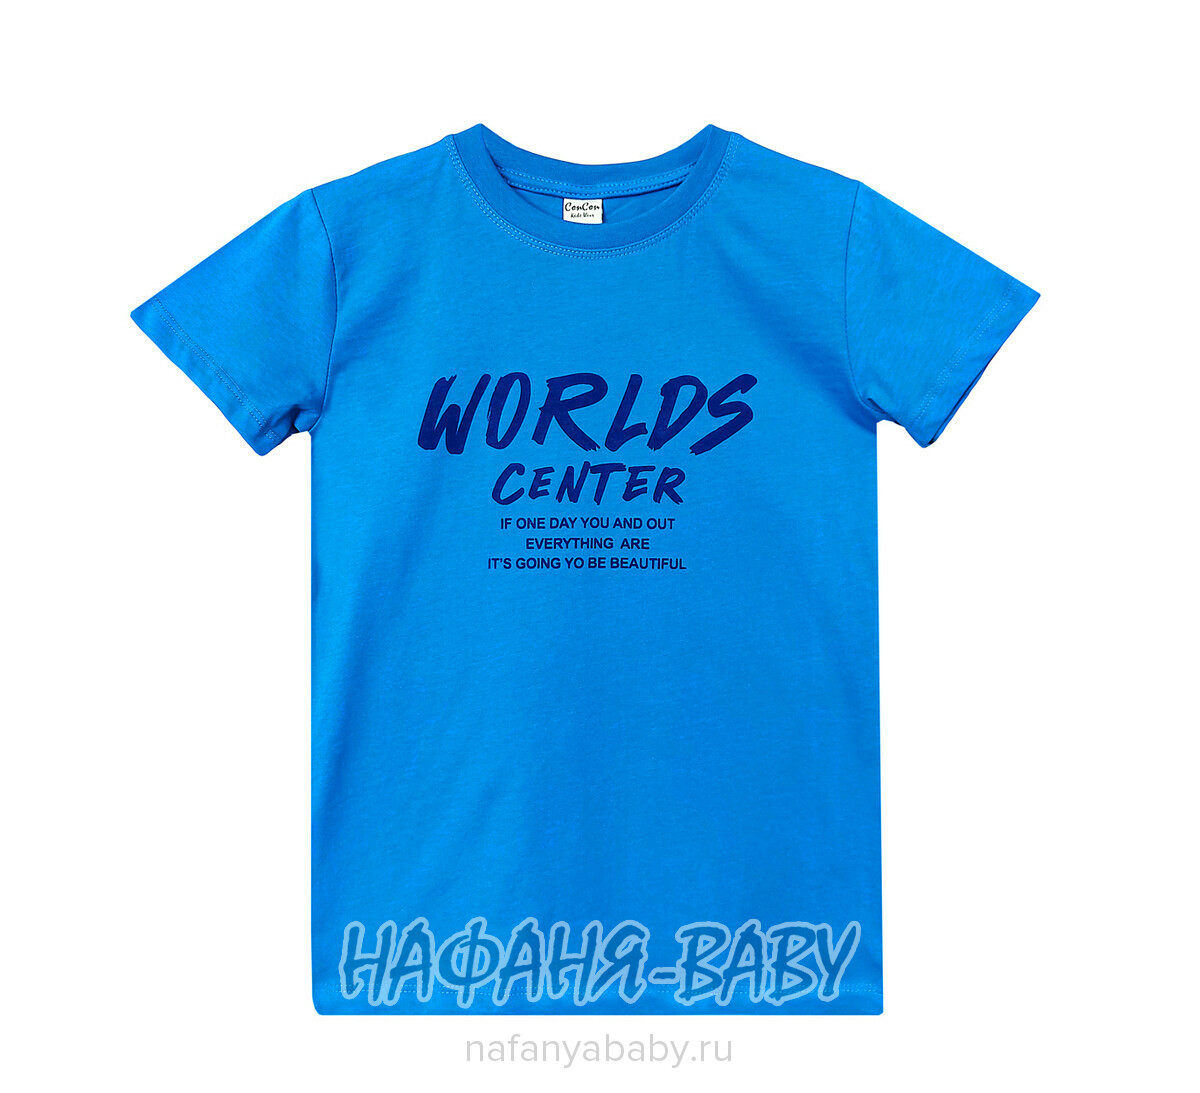 Подростковая футболка Con Con арт. 12085, 10-15 лет, цвет синий, оптом Турция